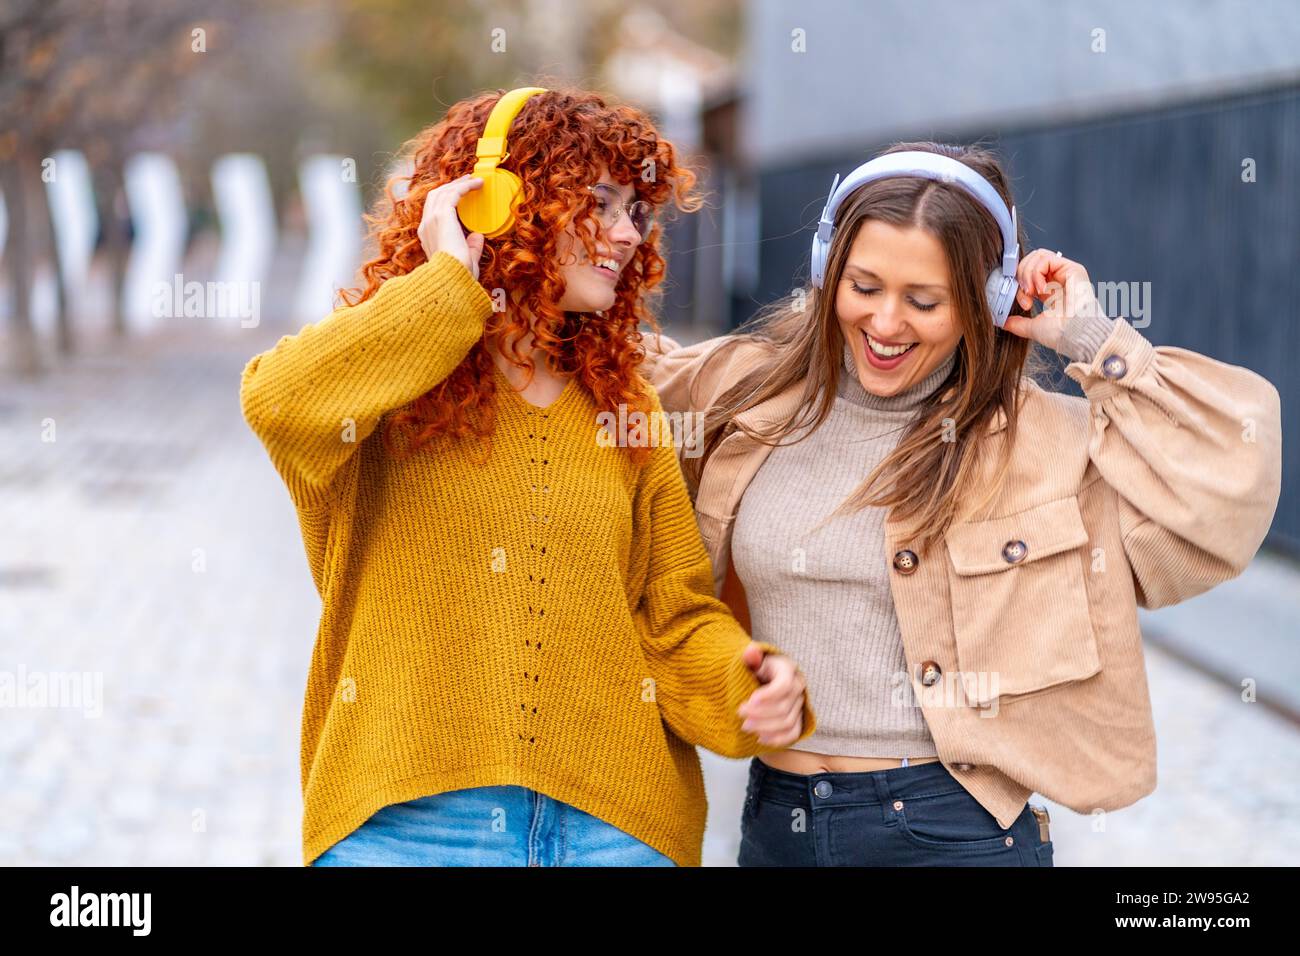 Frontalansicht zweier glücklicher Frauen, die auf der Straße tanzen und Musik hören Stockfoto